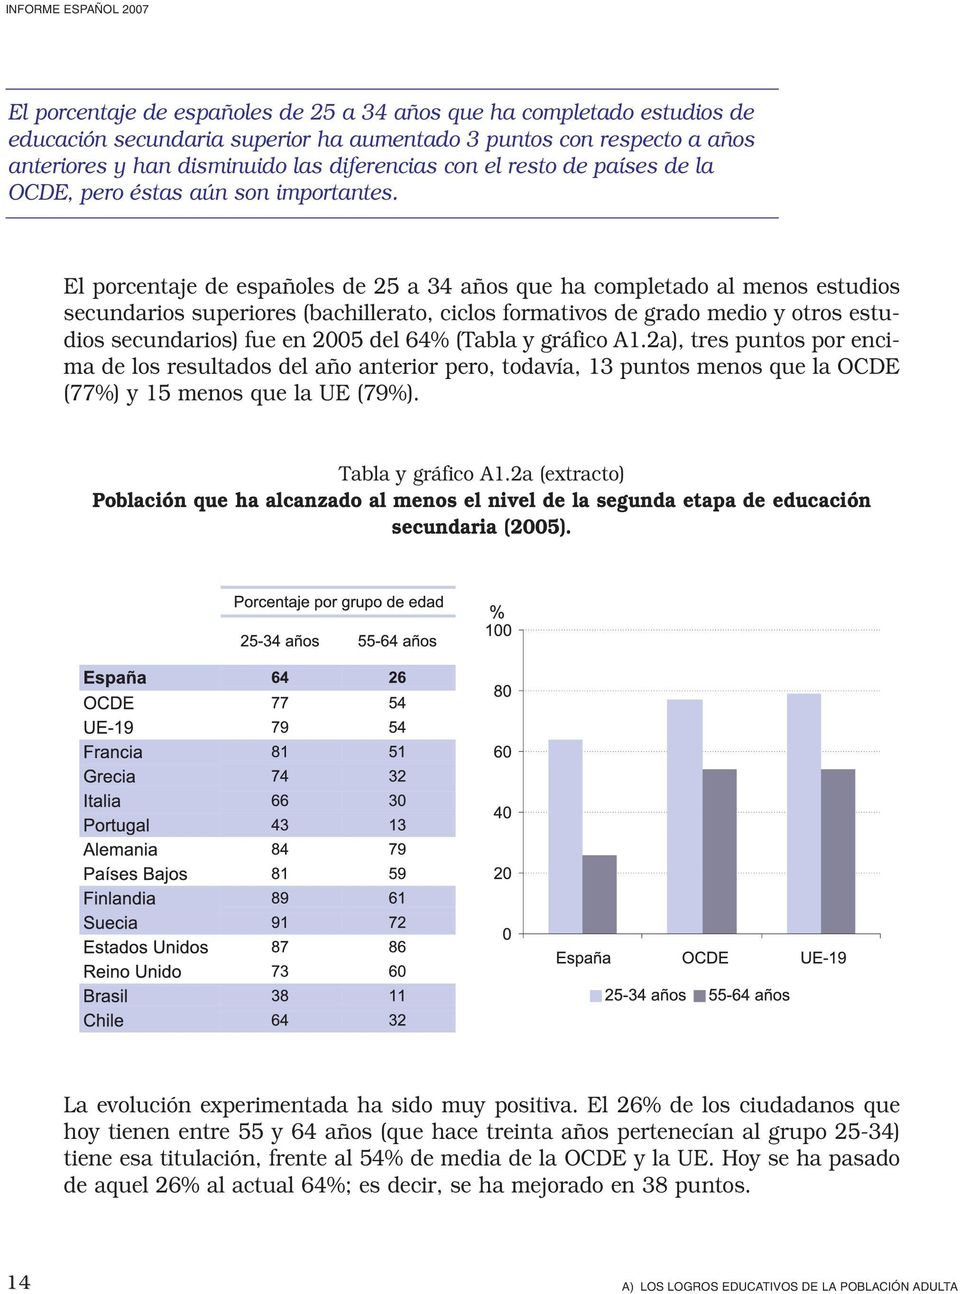 El porcentaje de españoles de 25 a 34 años que ha completado al menos estudios secundarios superiores (bachillerato, ciclos formativos de grado medio y otros estudios secundarios) fue en 2005 del 64%